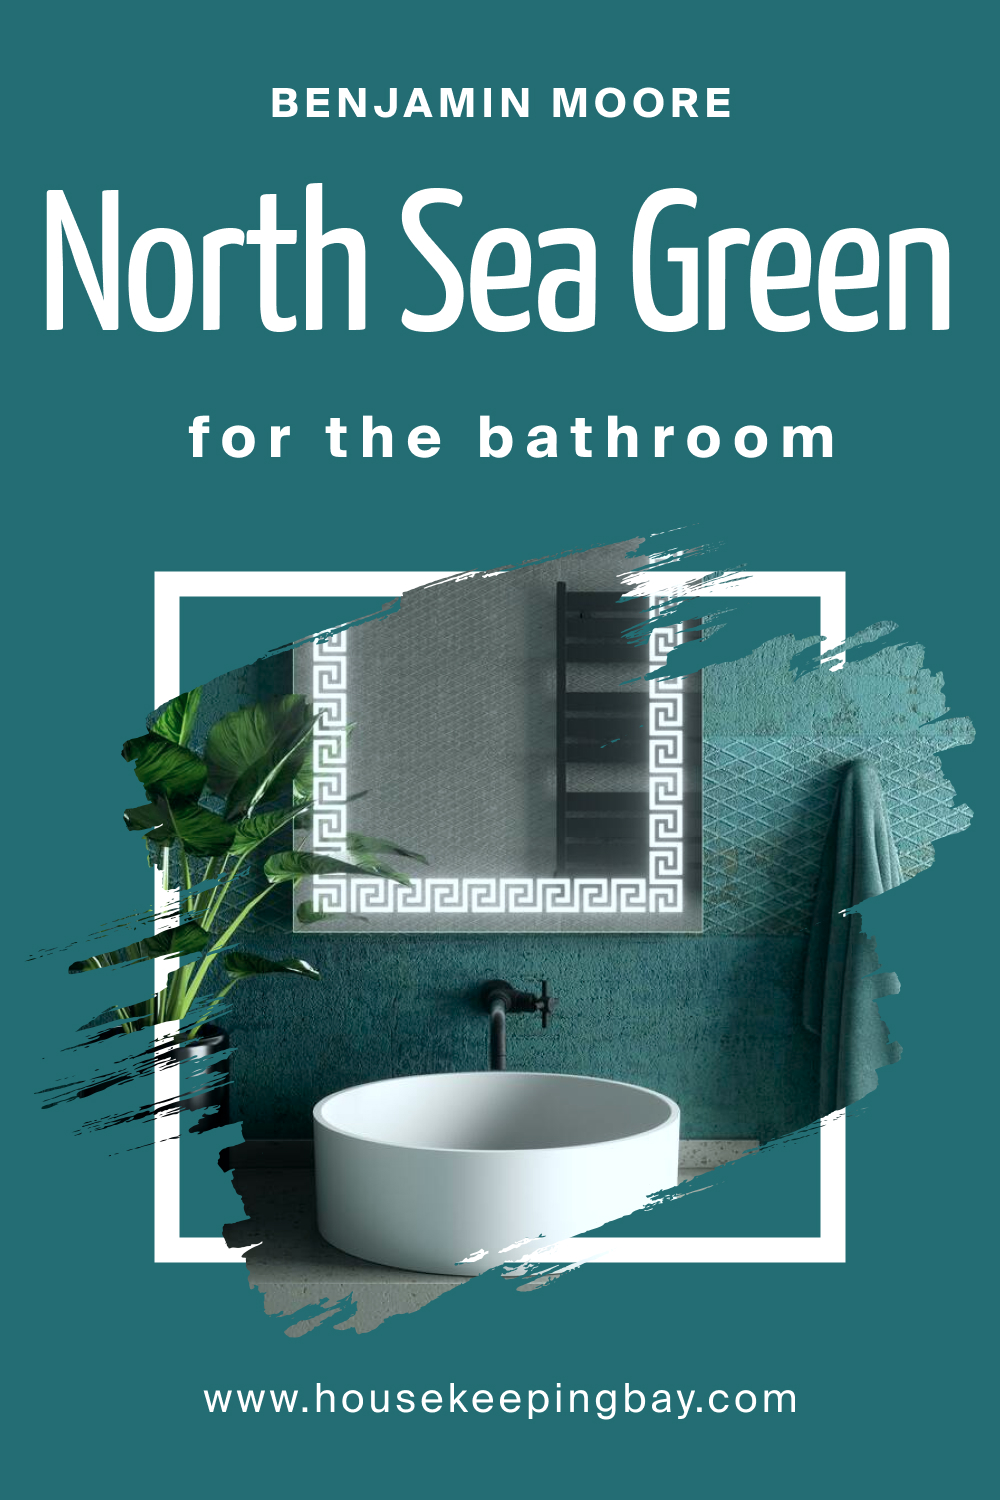 Benjamin Moore. North Sea Green 2053 30 for the Bathroom